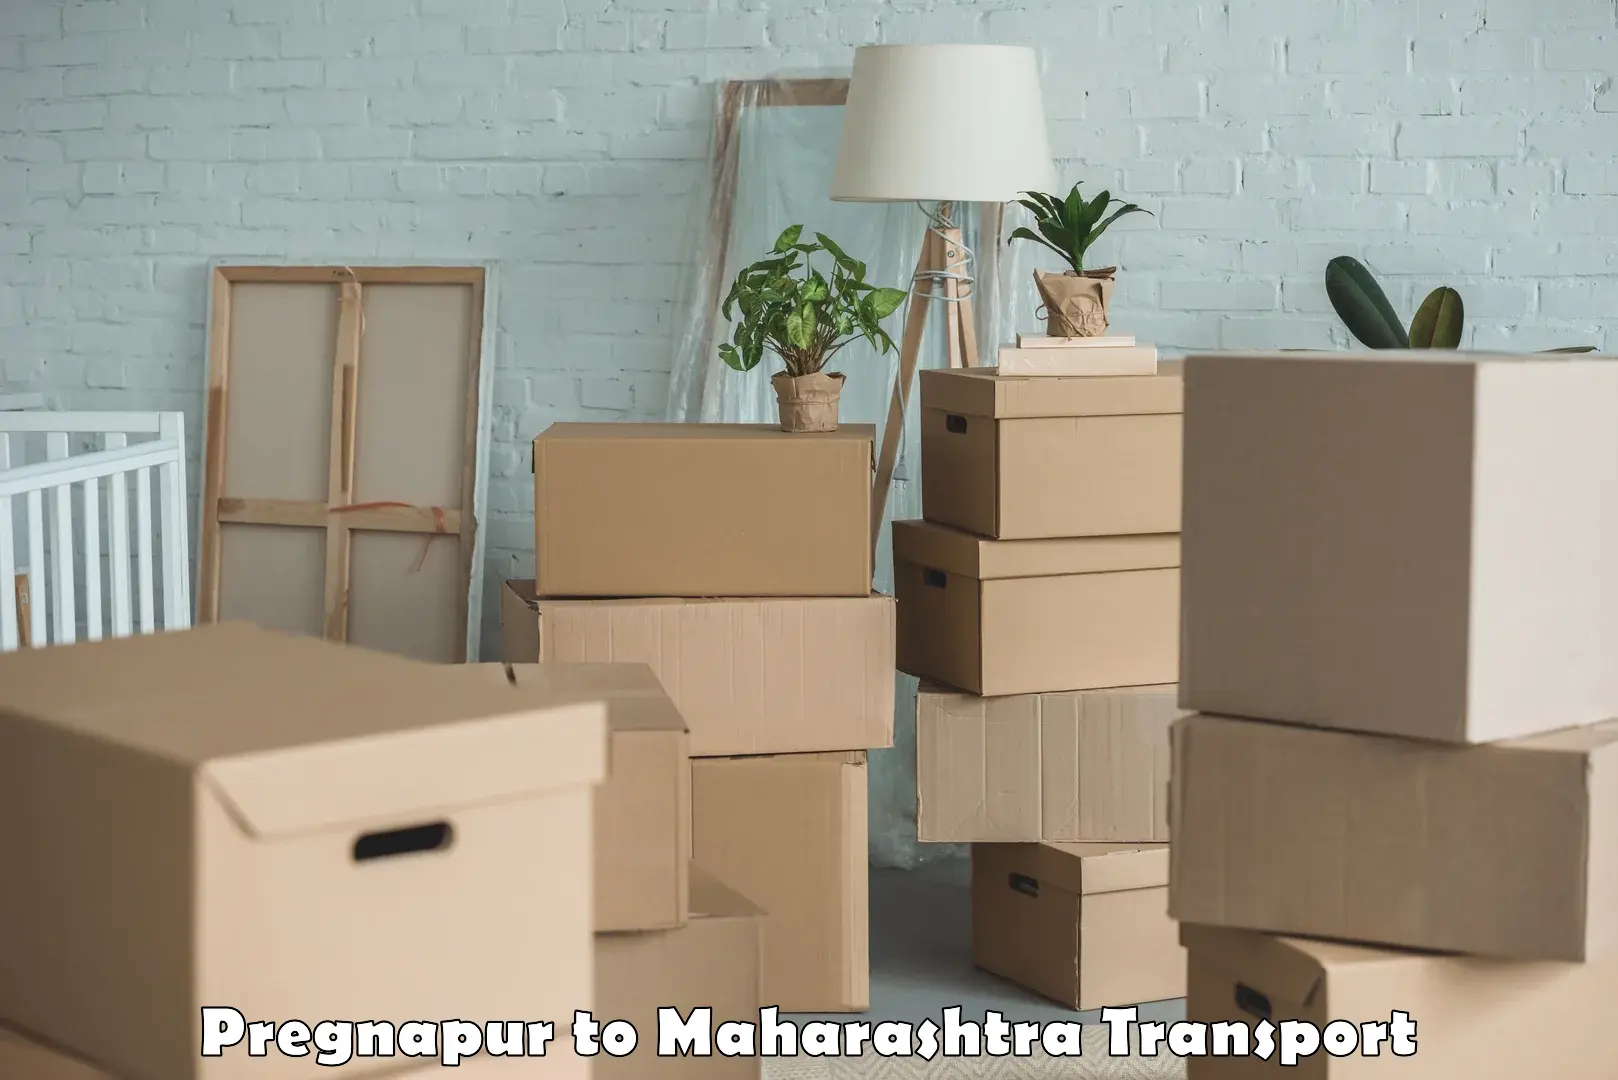 Container transport service Pregnapur to Gondia